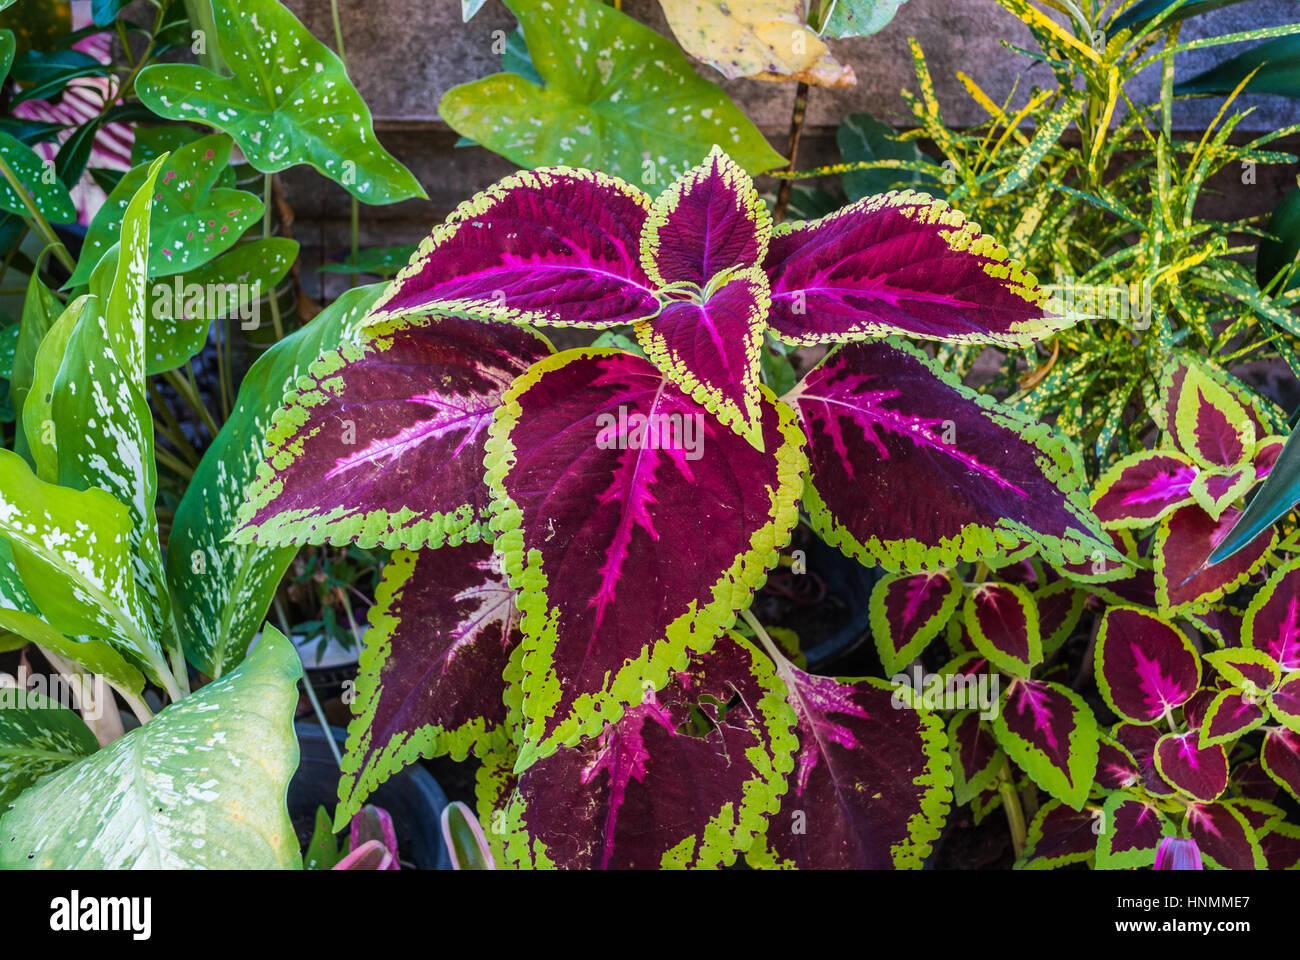 Lila Brennessel Pflanze im Garten Hintergrund gemalt Stockfotografie - Alamy